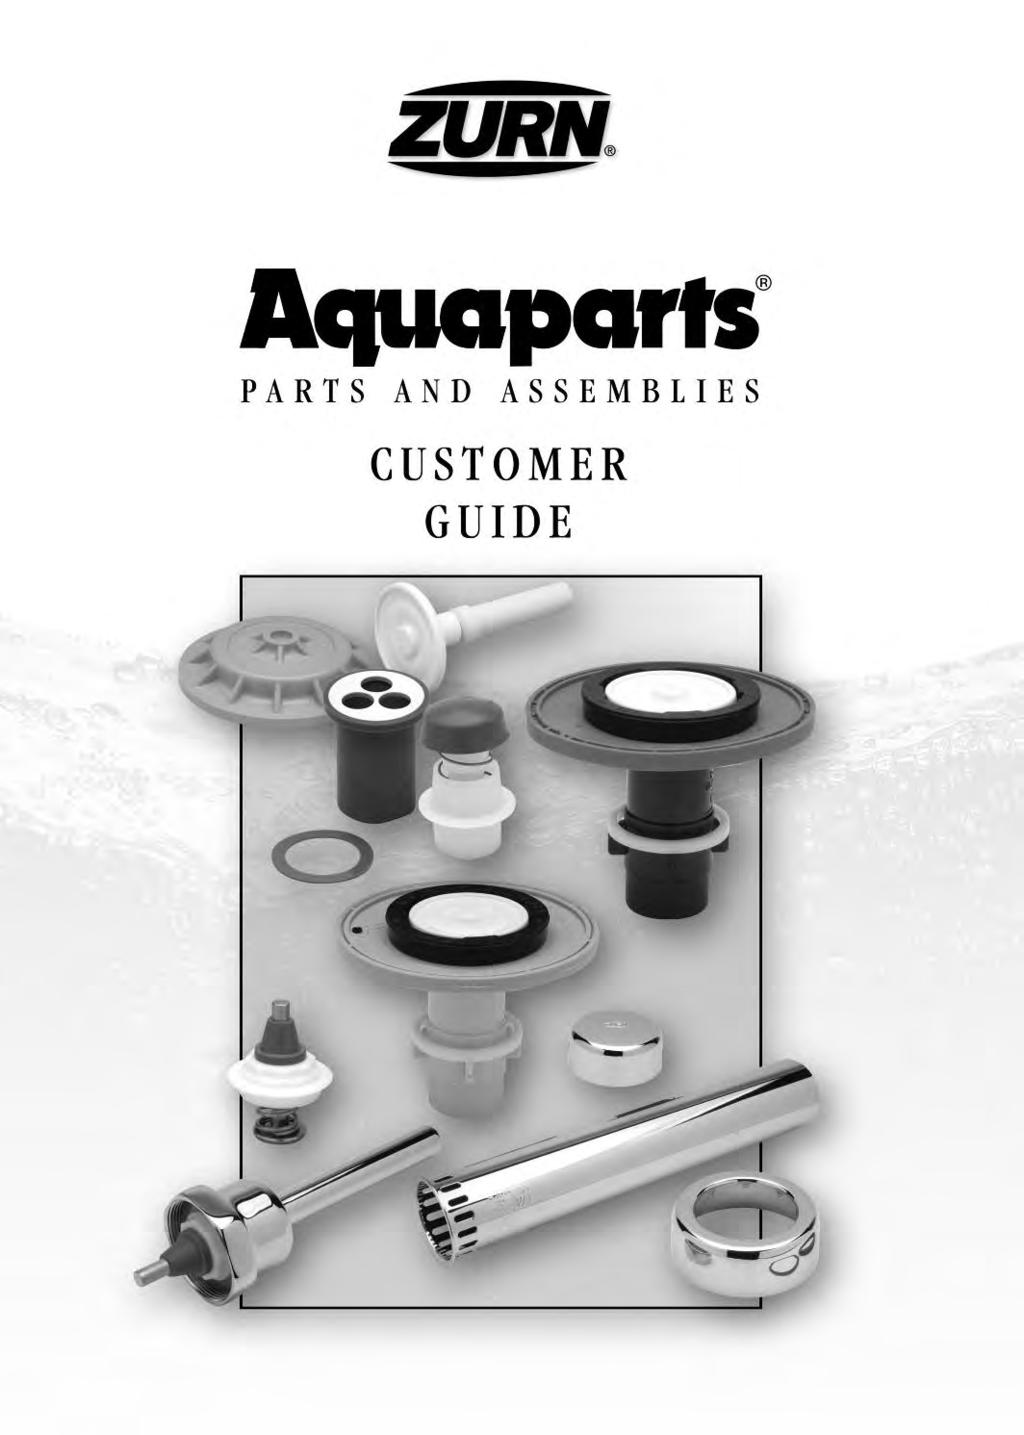 Aquaparts Parts and